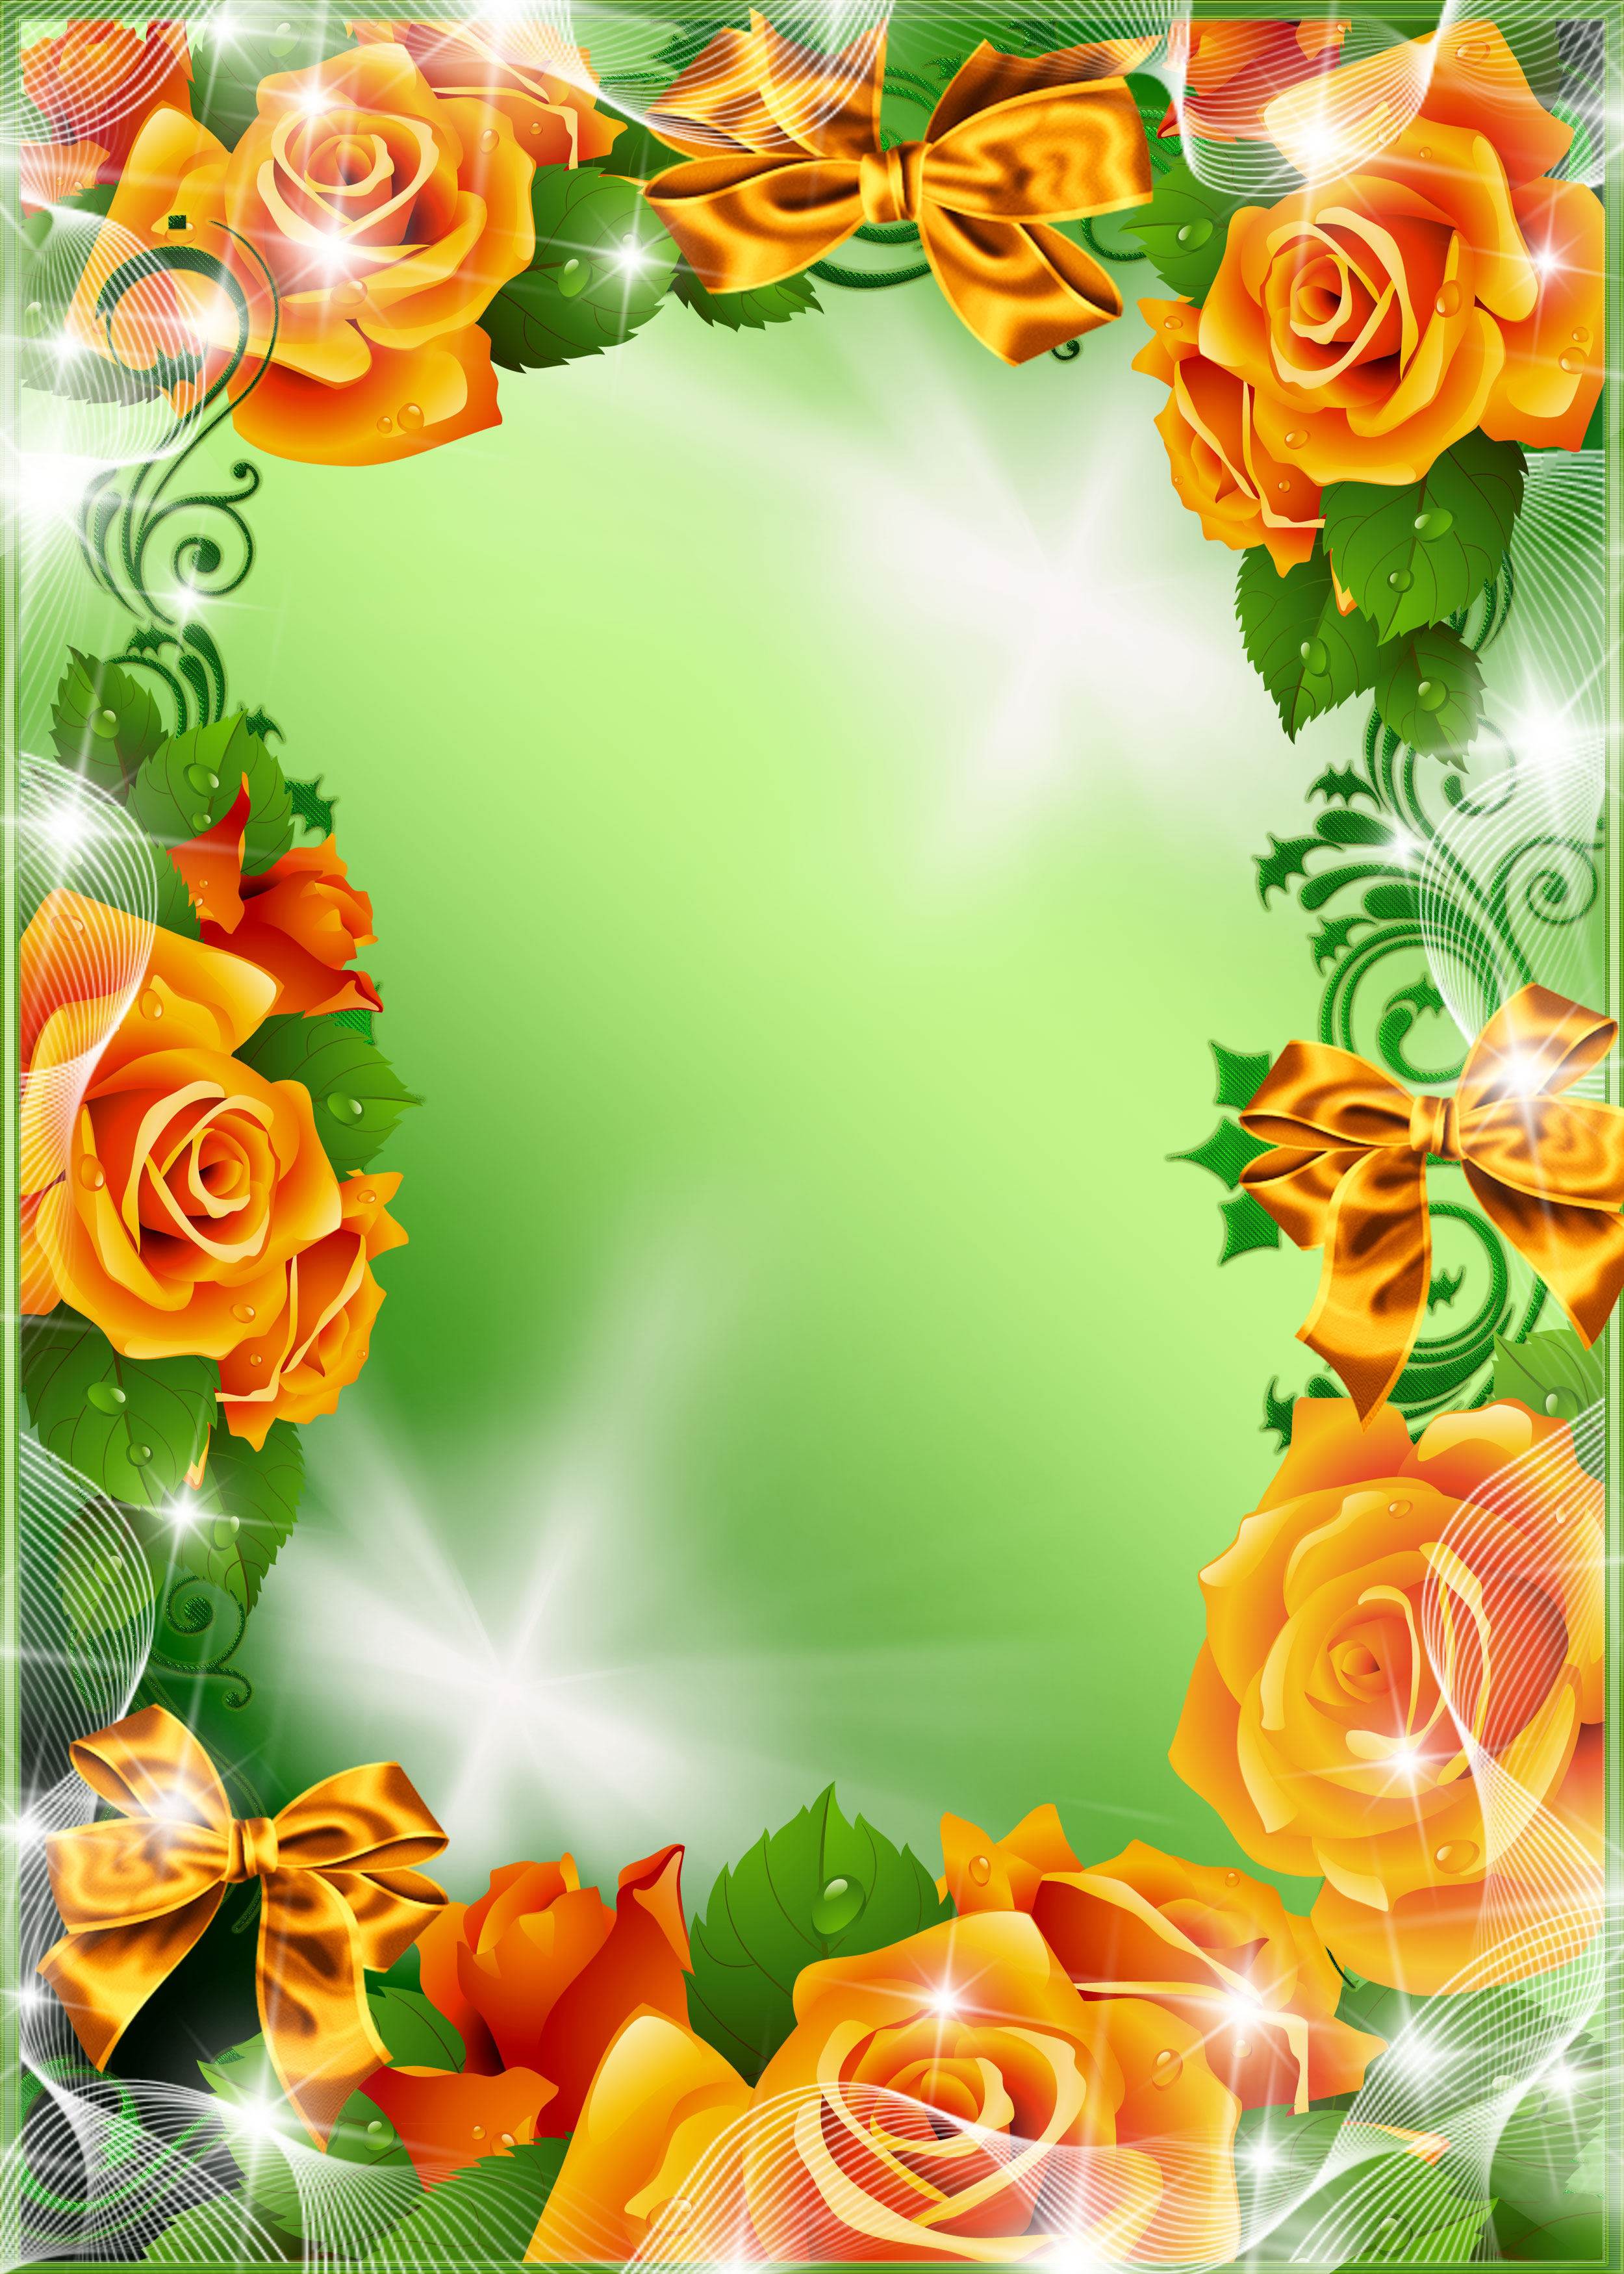 壁紙 背景イラスト 花のフレーム 外枠 No 027 黄バラ 光彩 緑